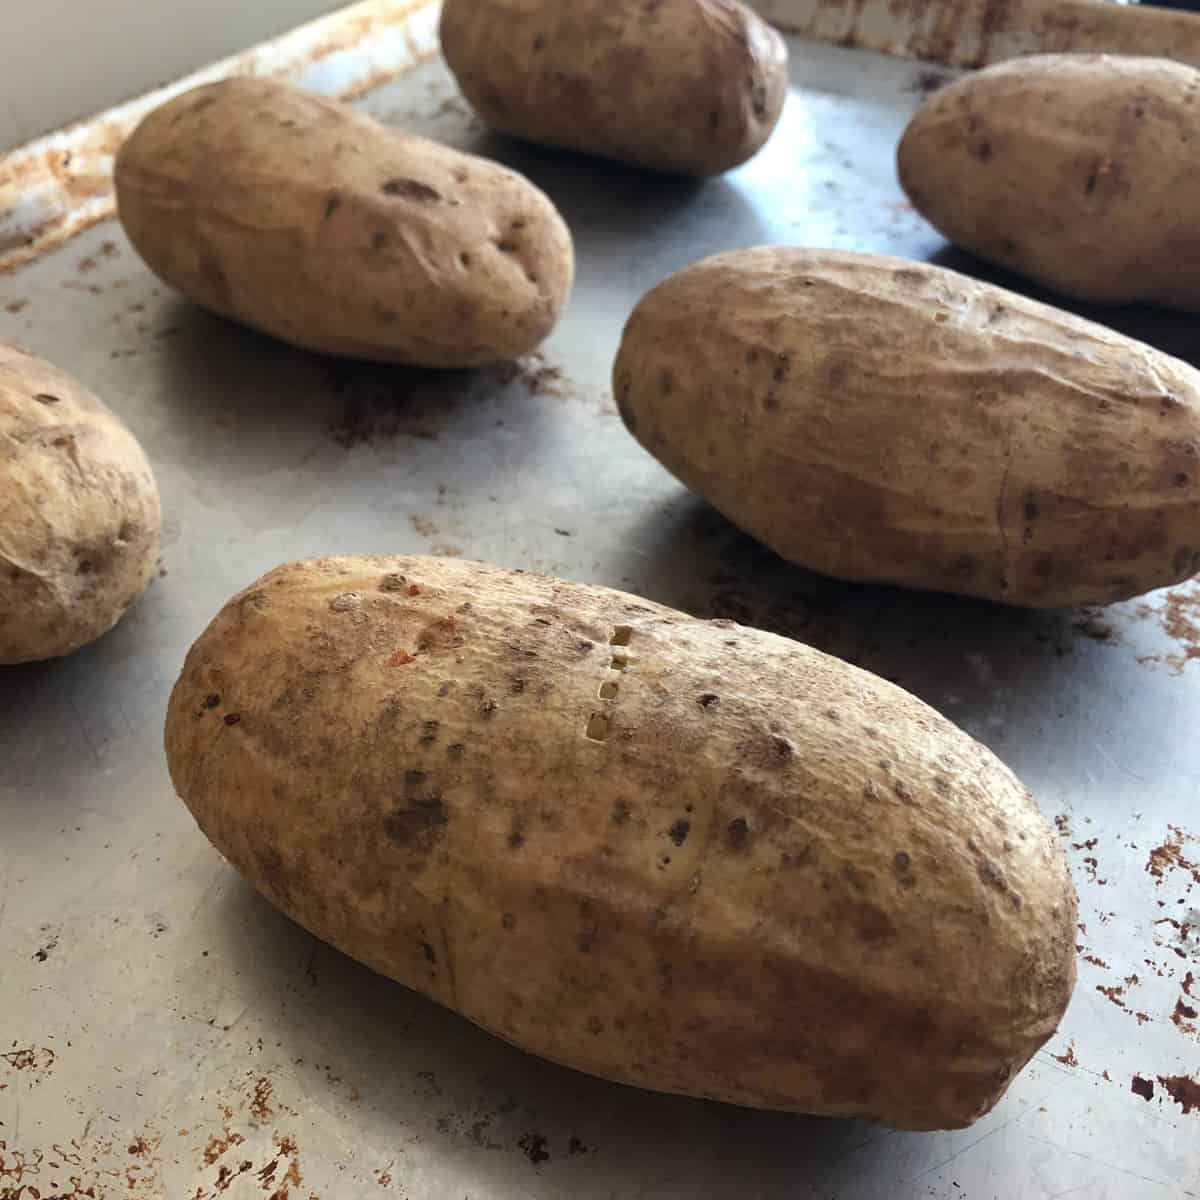 Russet potatoes on a baking sheet.